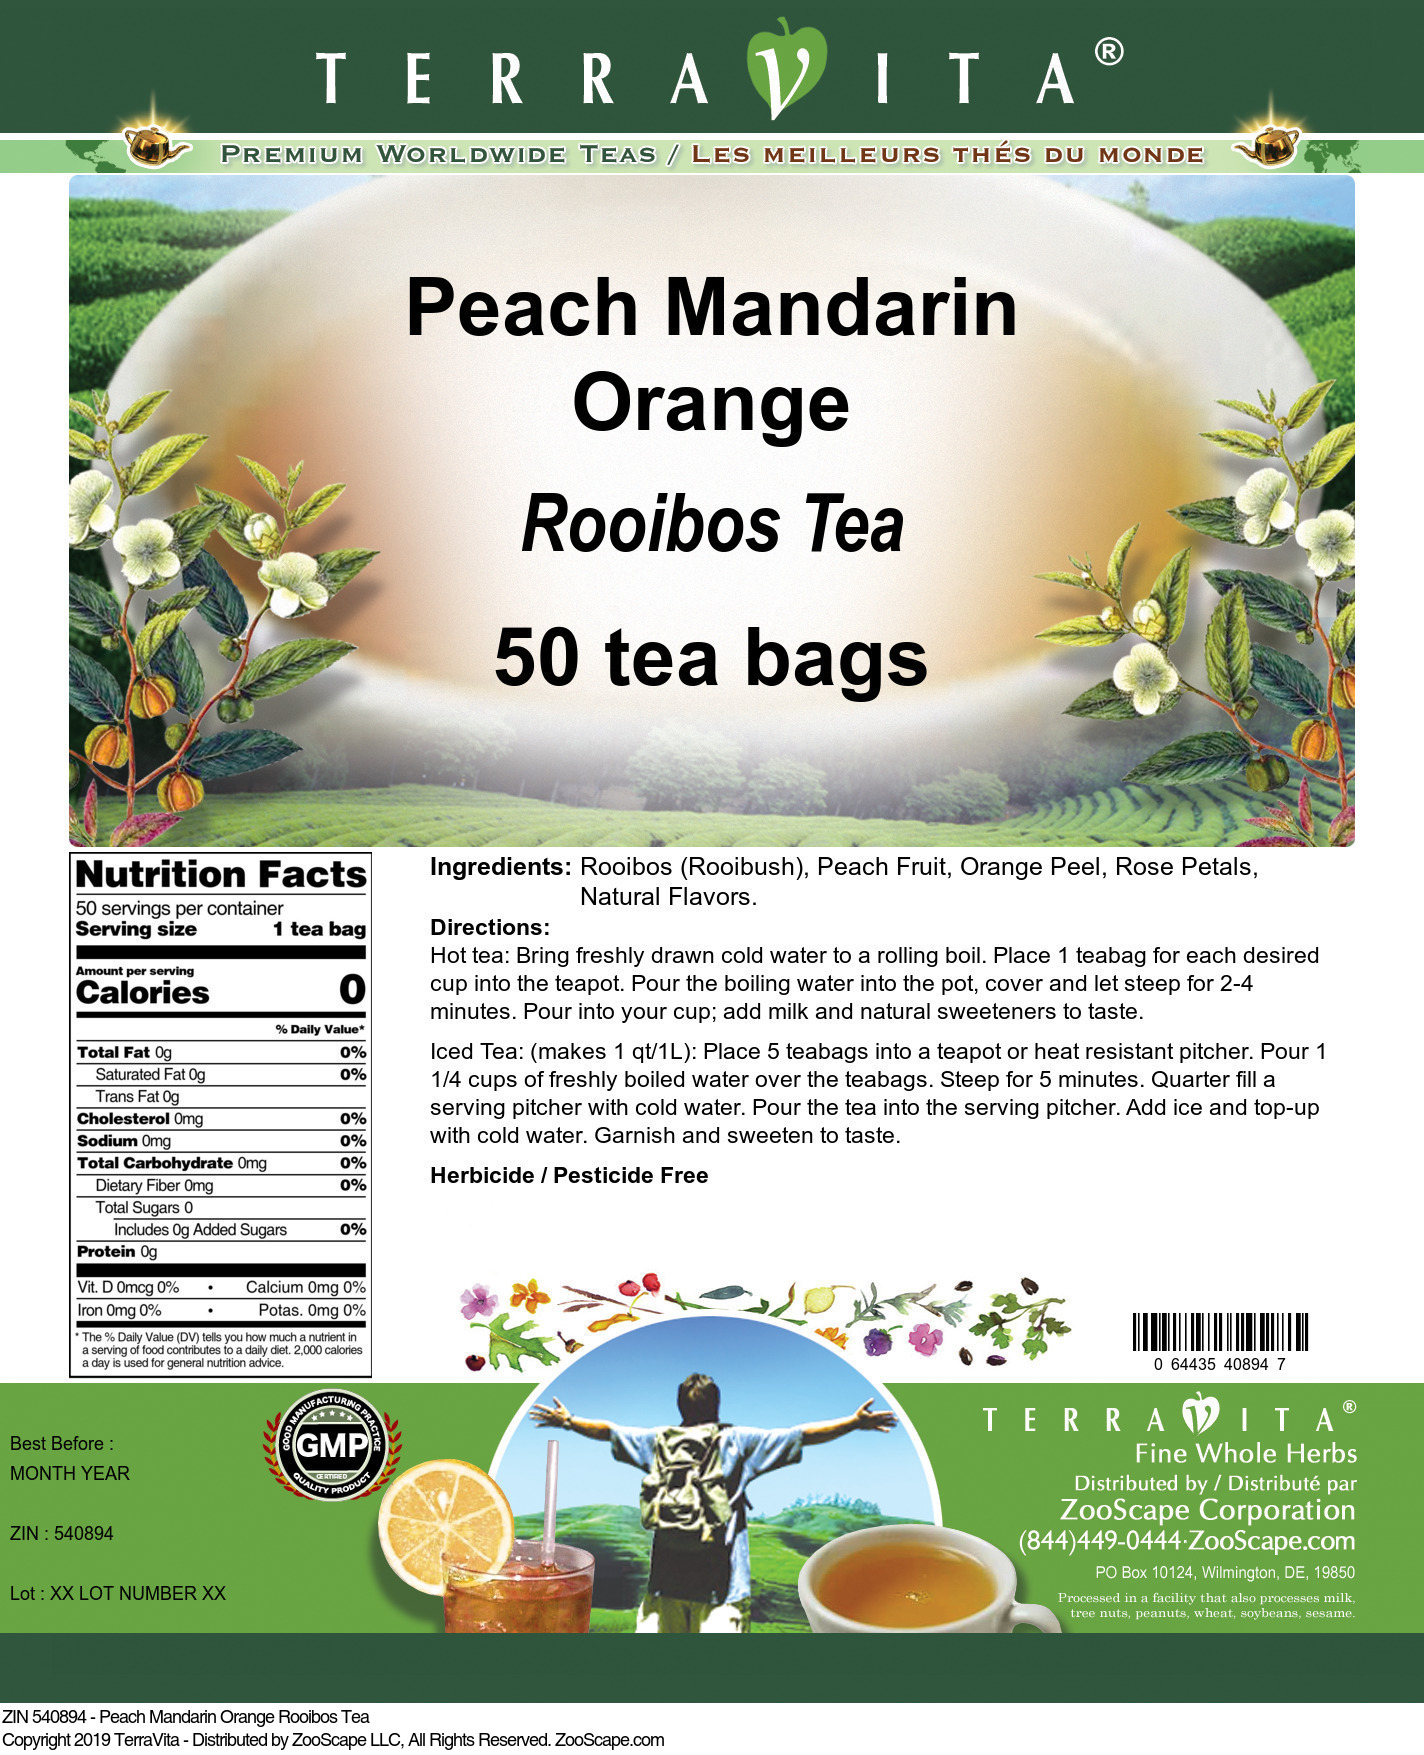 Peach Mandarin Orange Rooibos Tea - Label